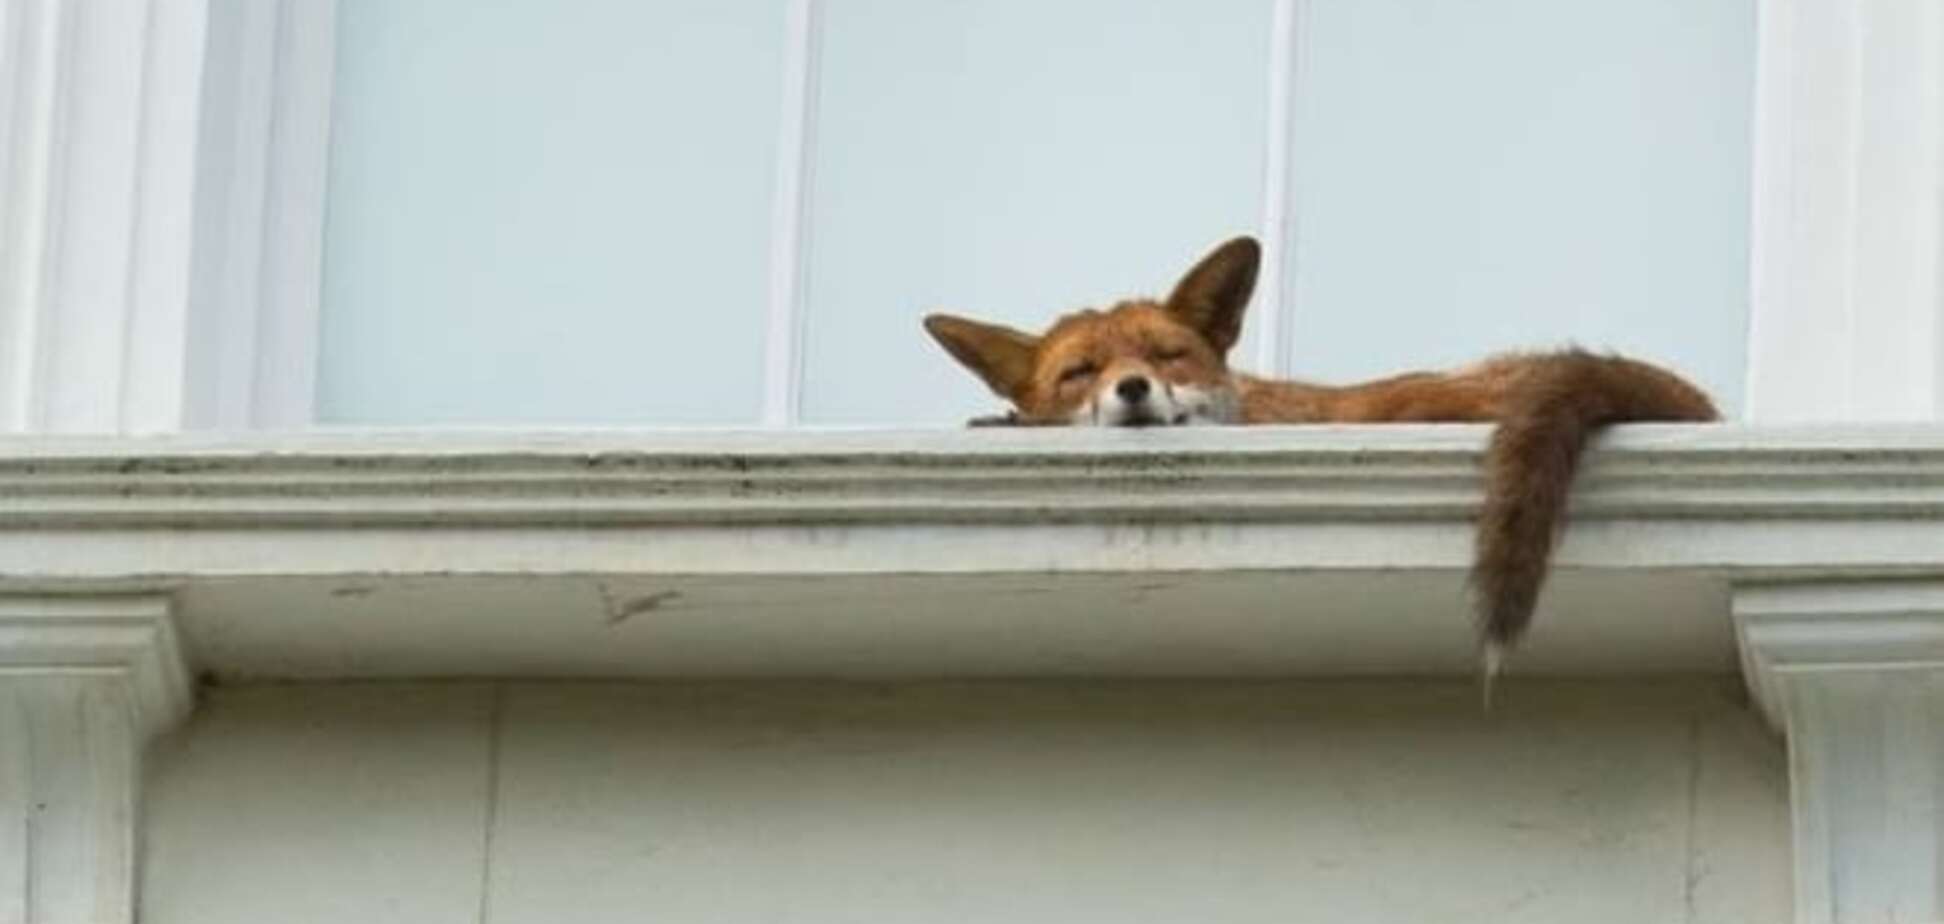 Спящая лисица на подоконнике покорила интернет: трогательное фото